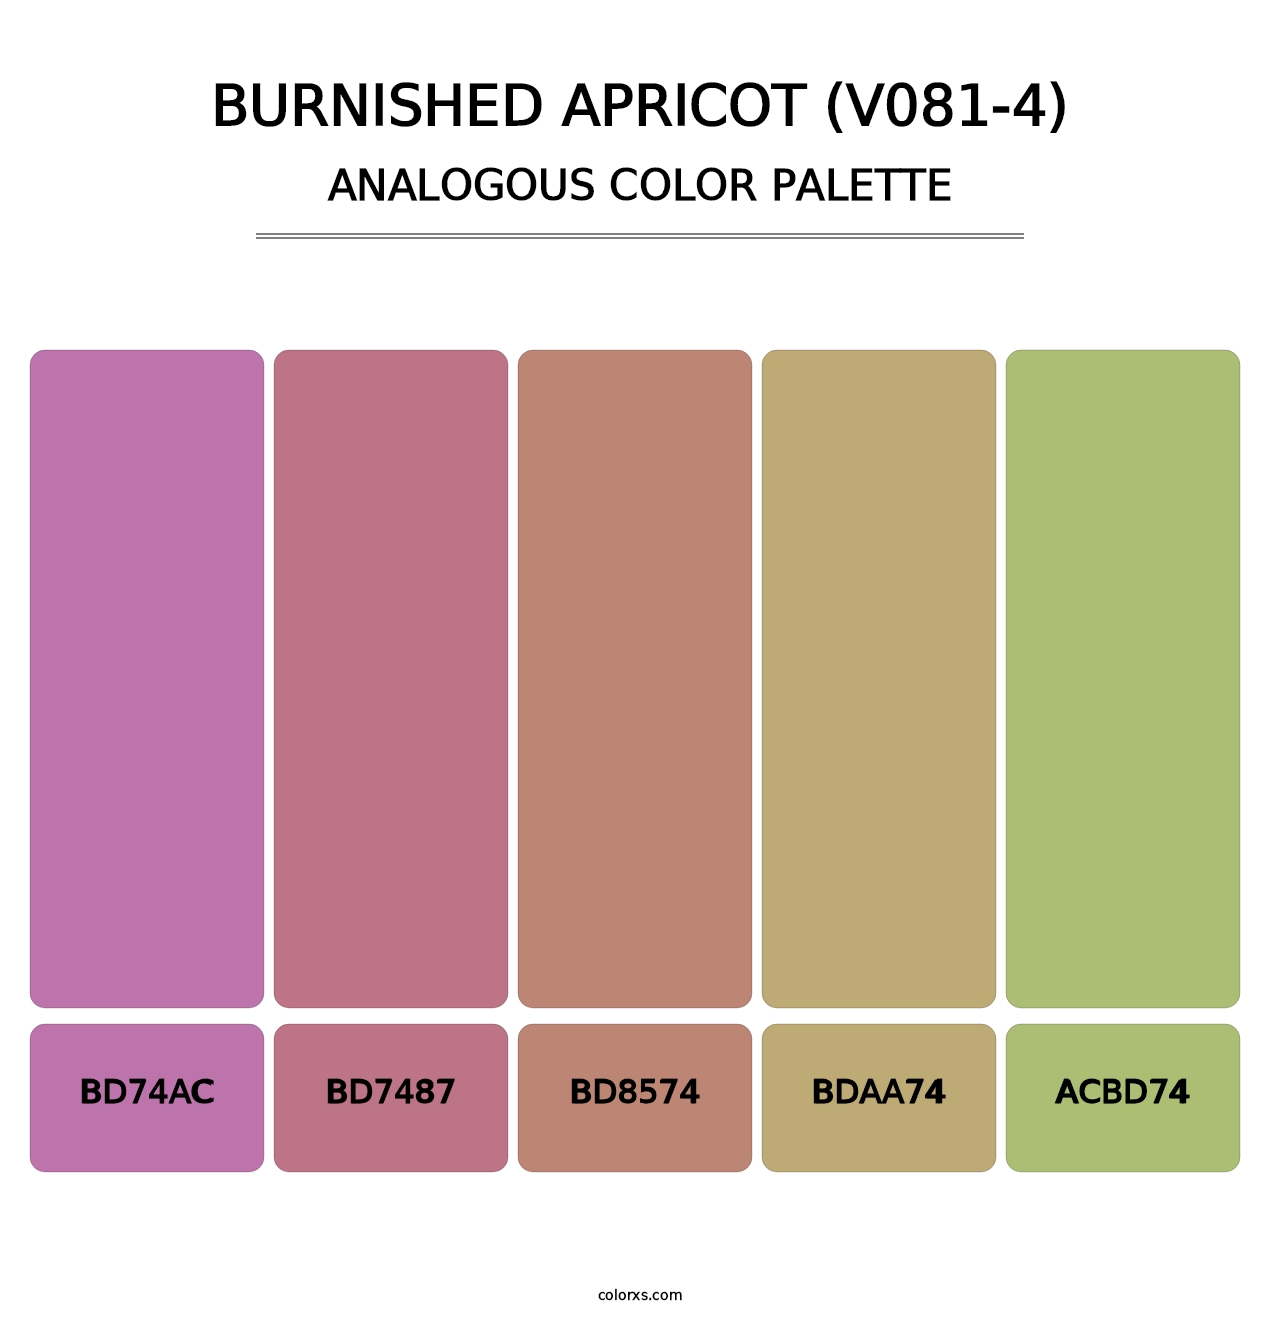 Burnished Apricot (V081-4) - Analogous Color Palette